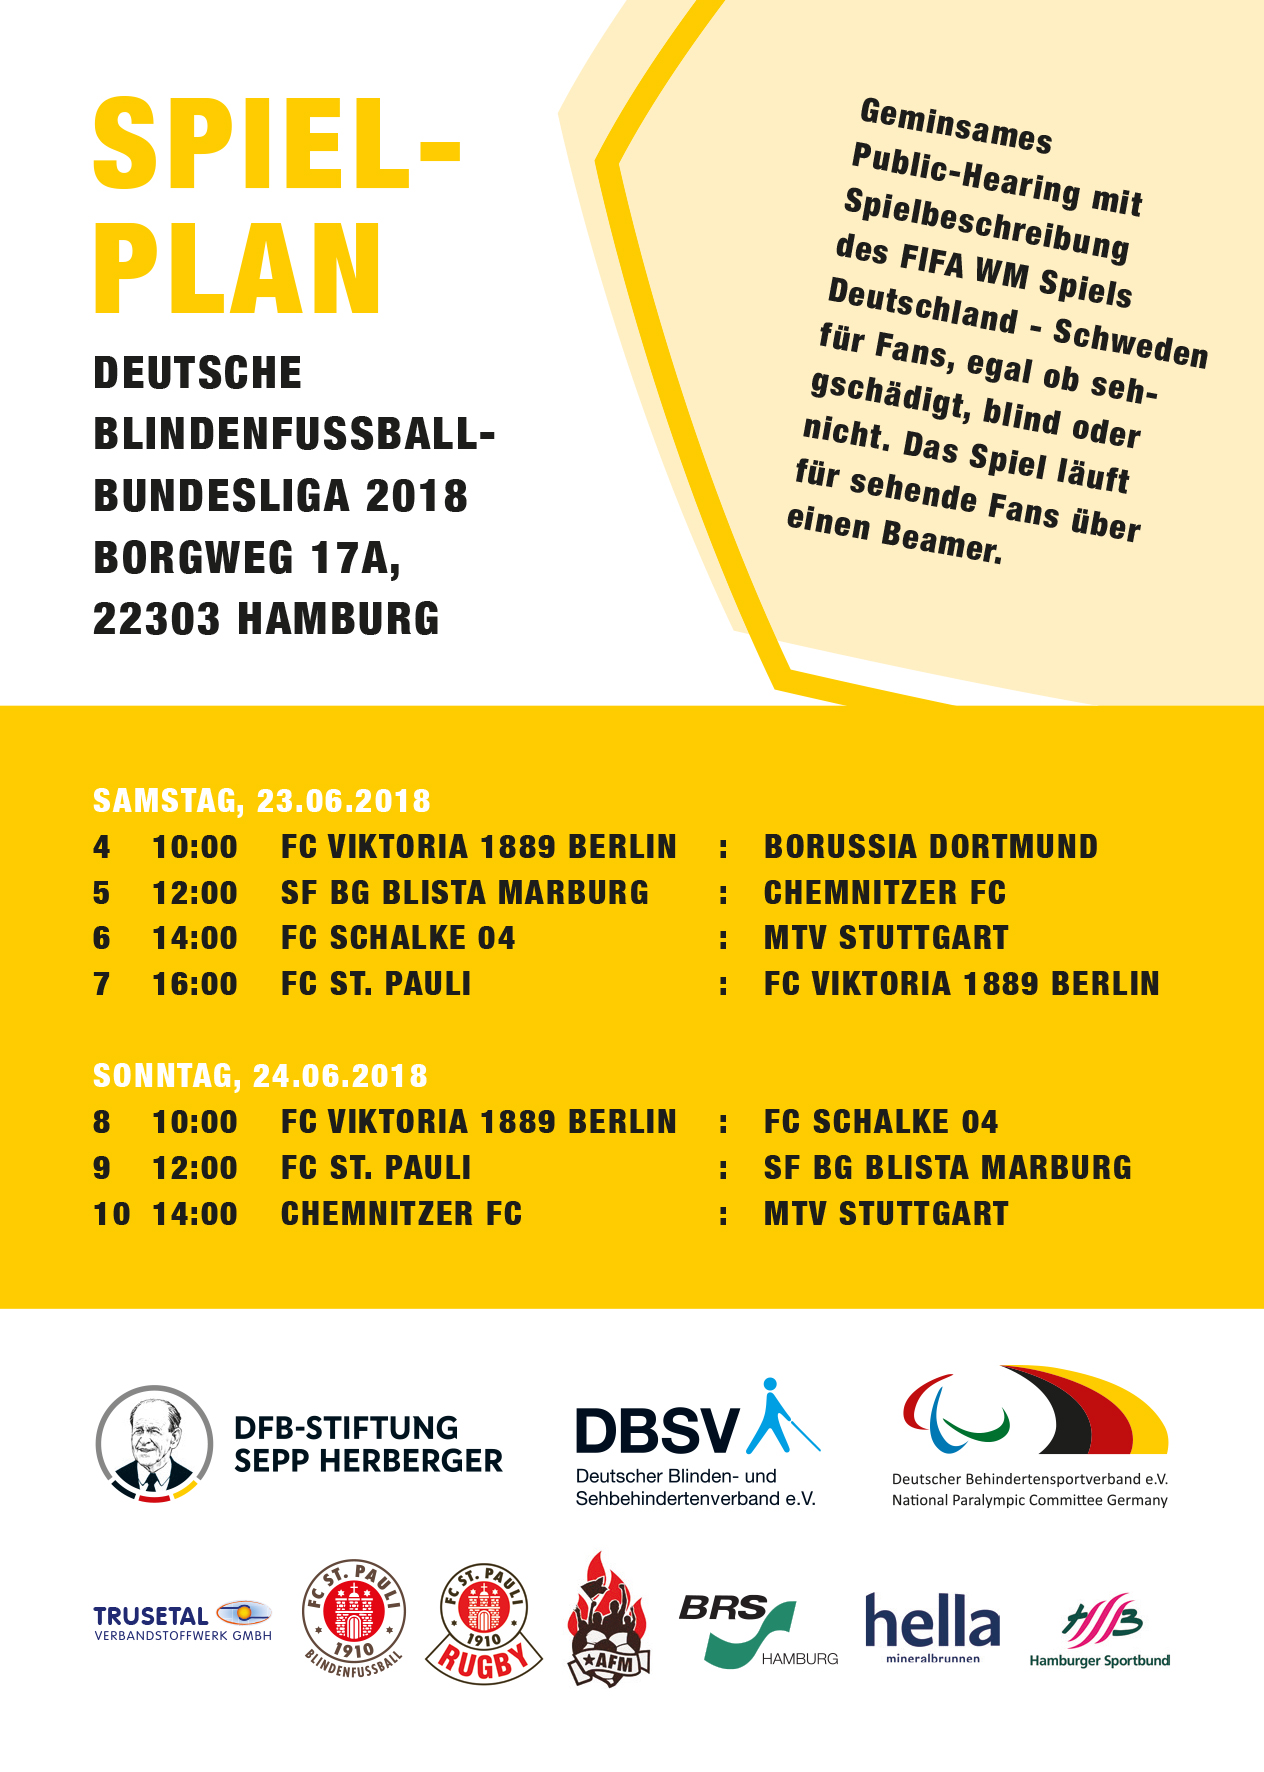 Der Spielplan des 2. Spieltages der Blindenfußball-Bundesliga 2018